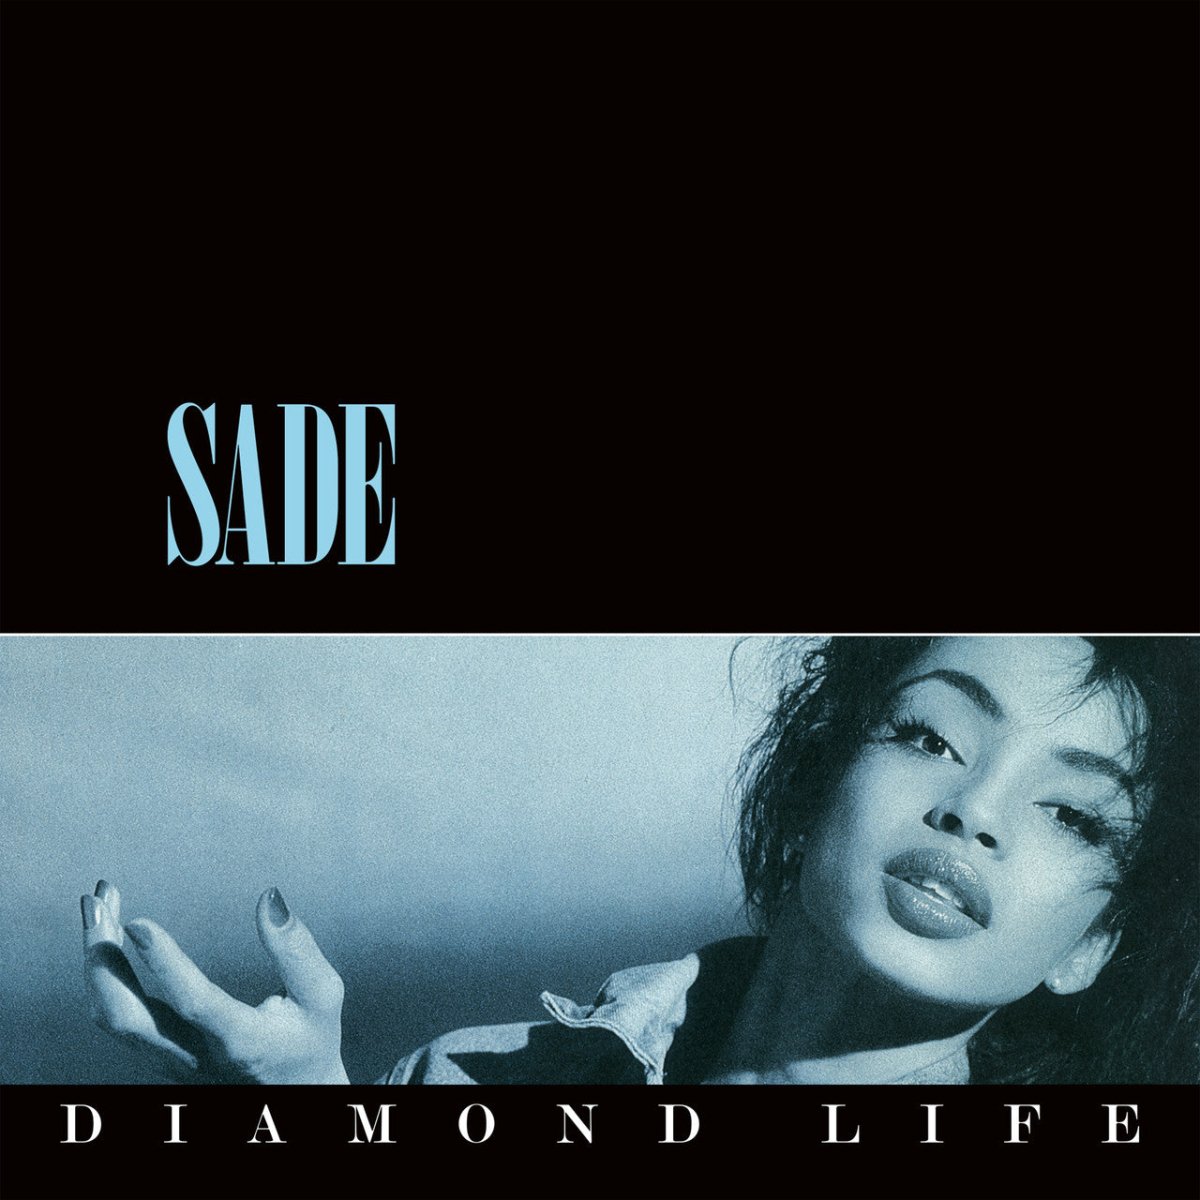 Sade - Diamond Life Vinyl